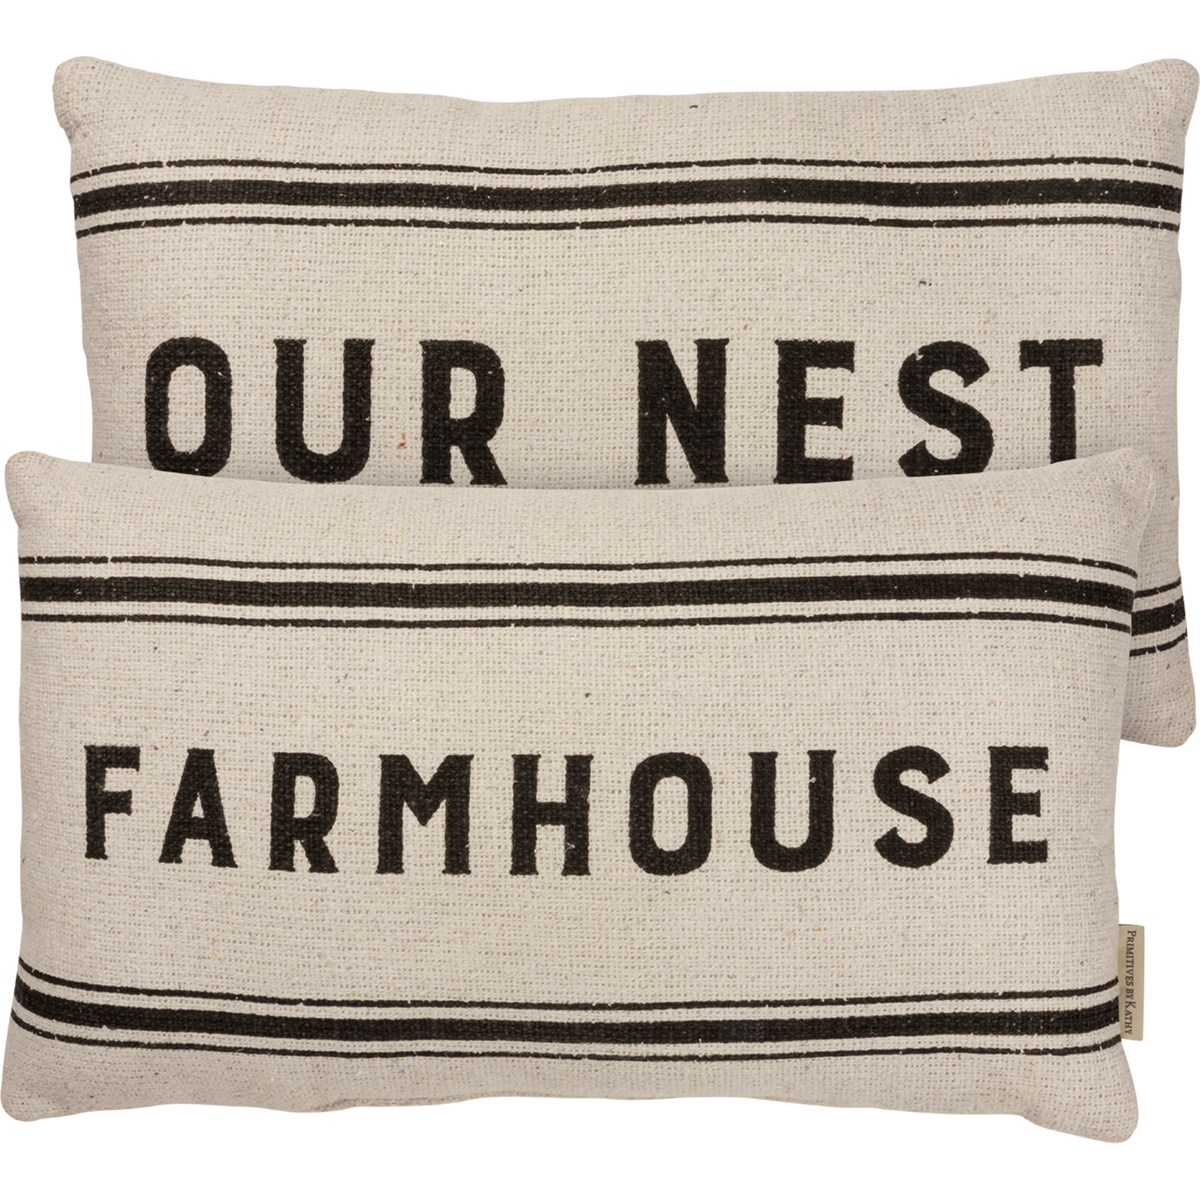 Farmhouse Our Nest Pillow - Cotton, Zipper